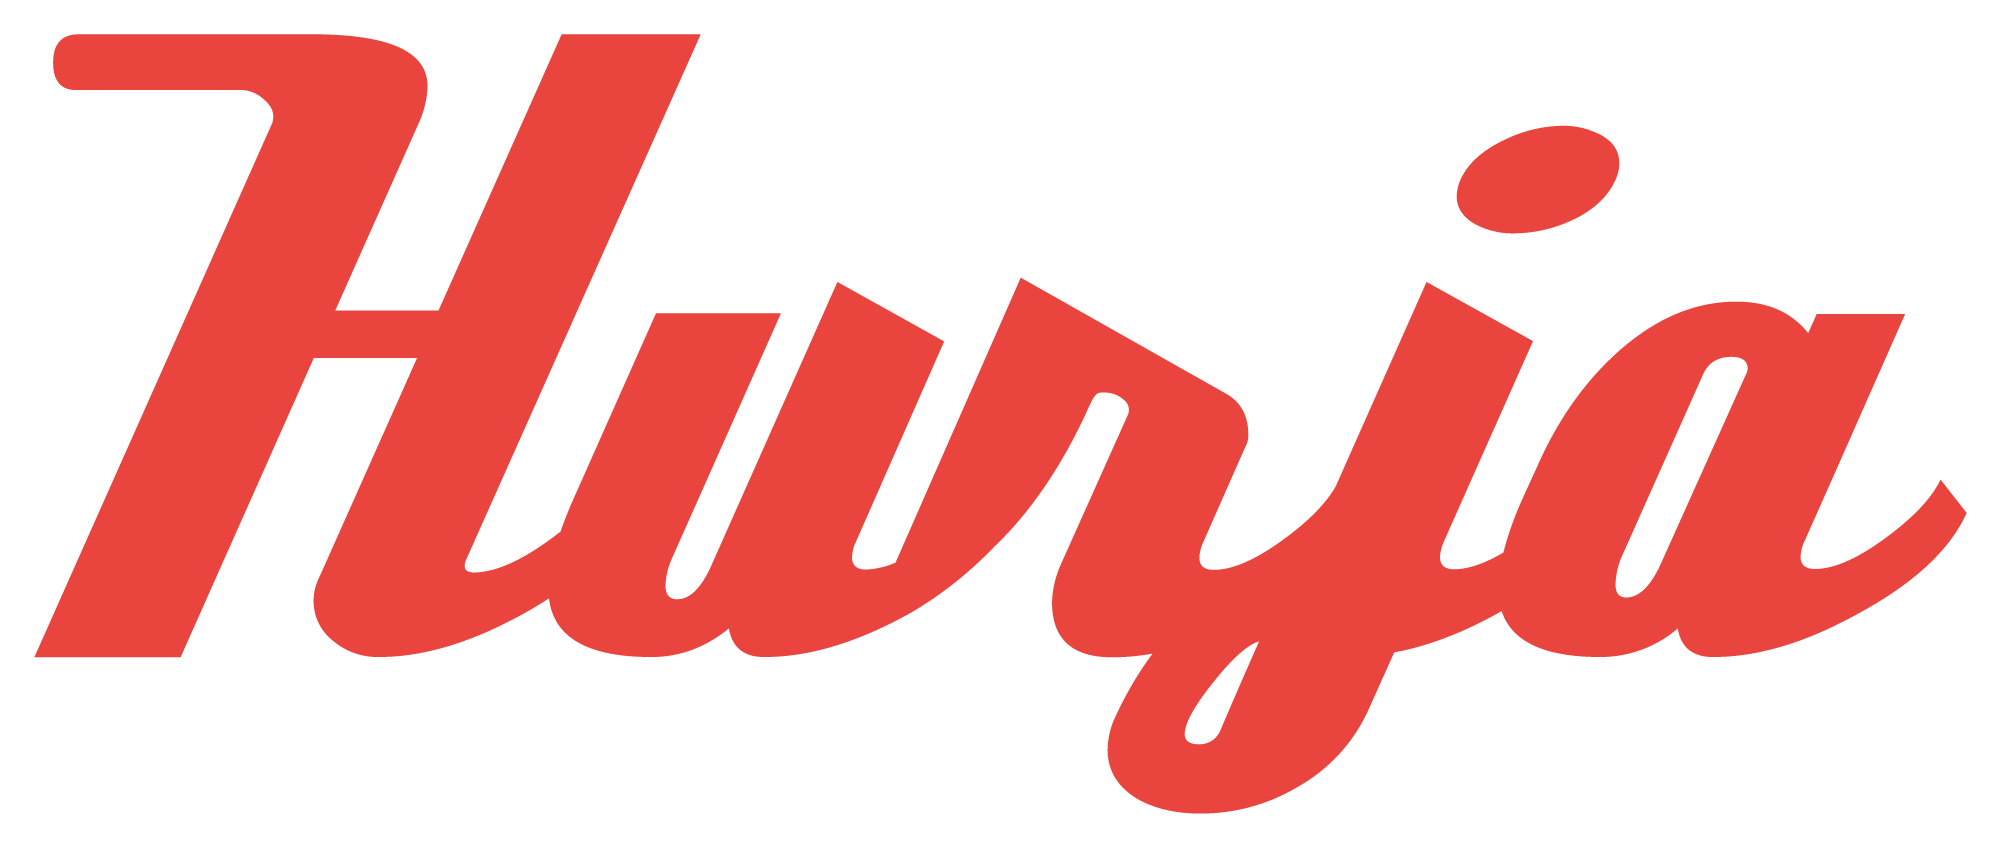 Hurja Solutions logo